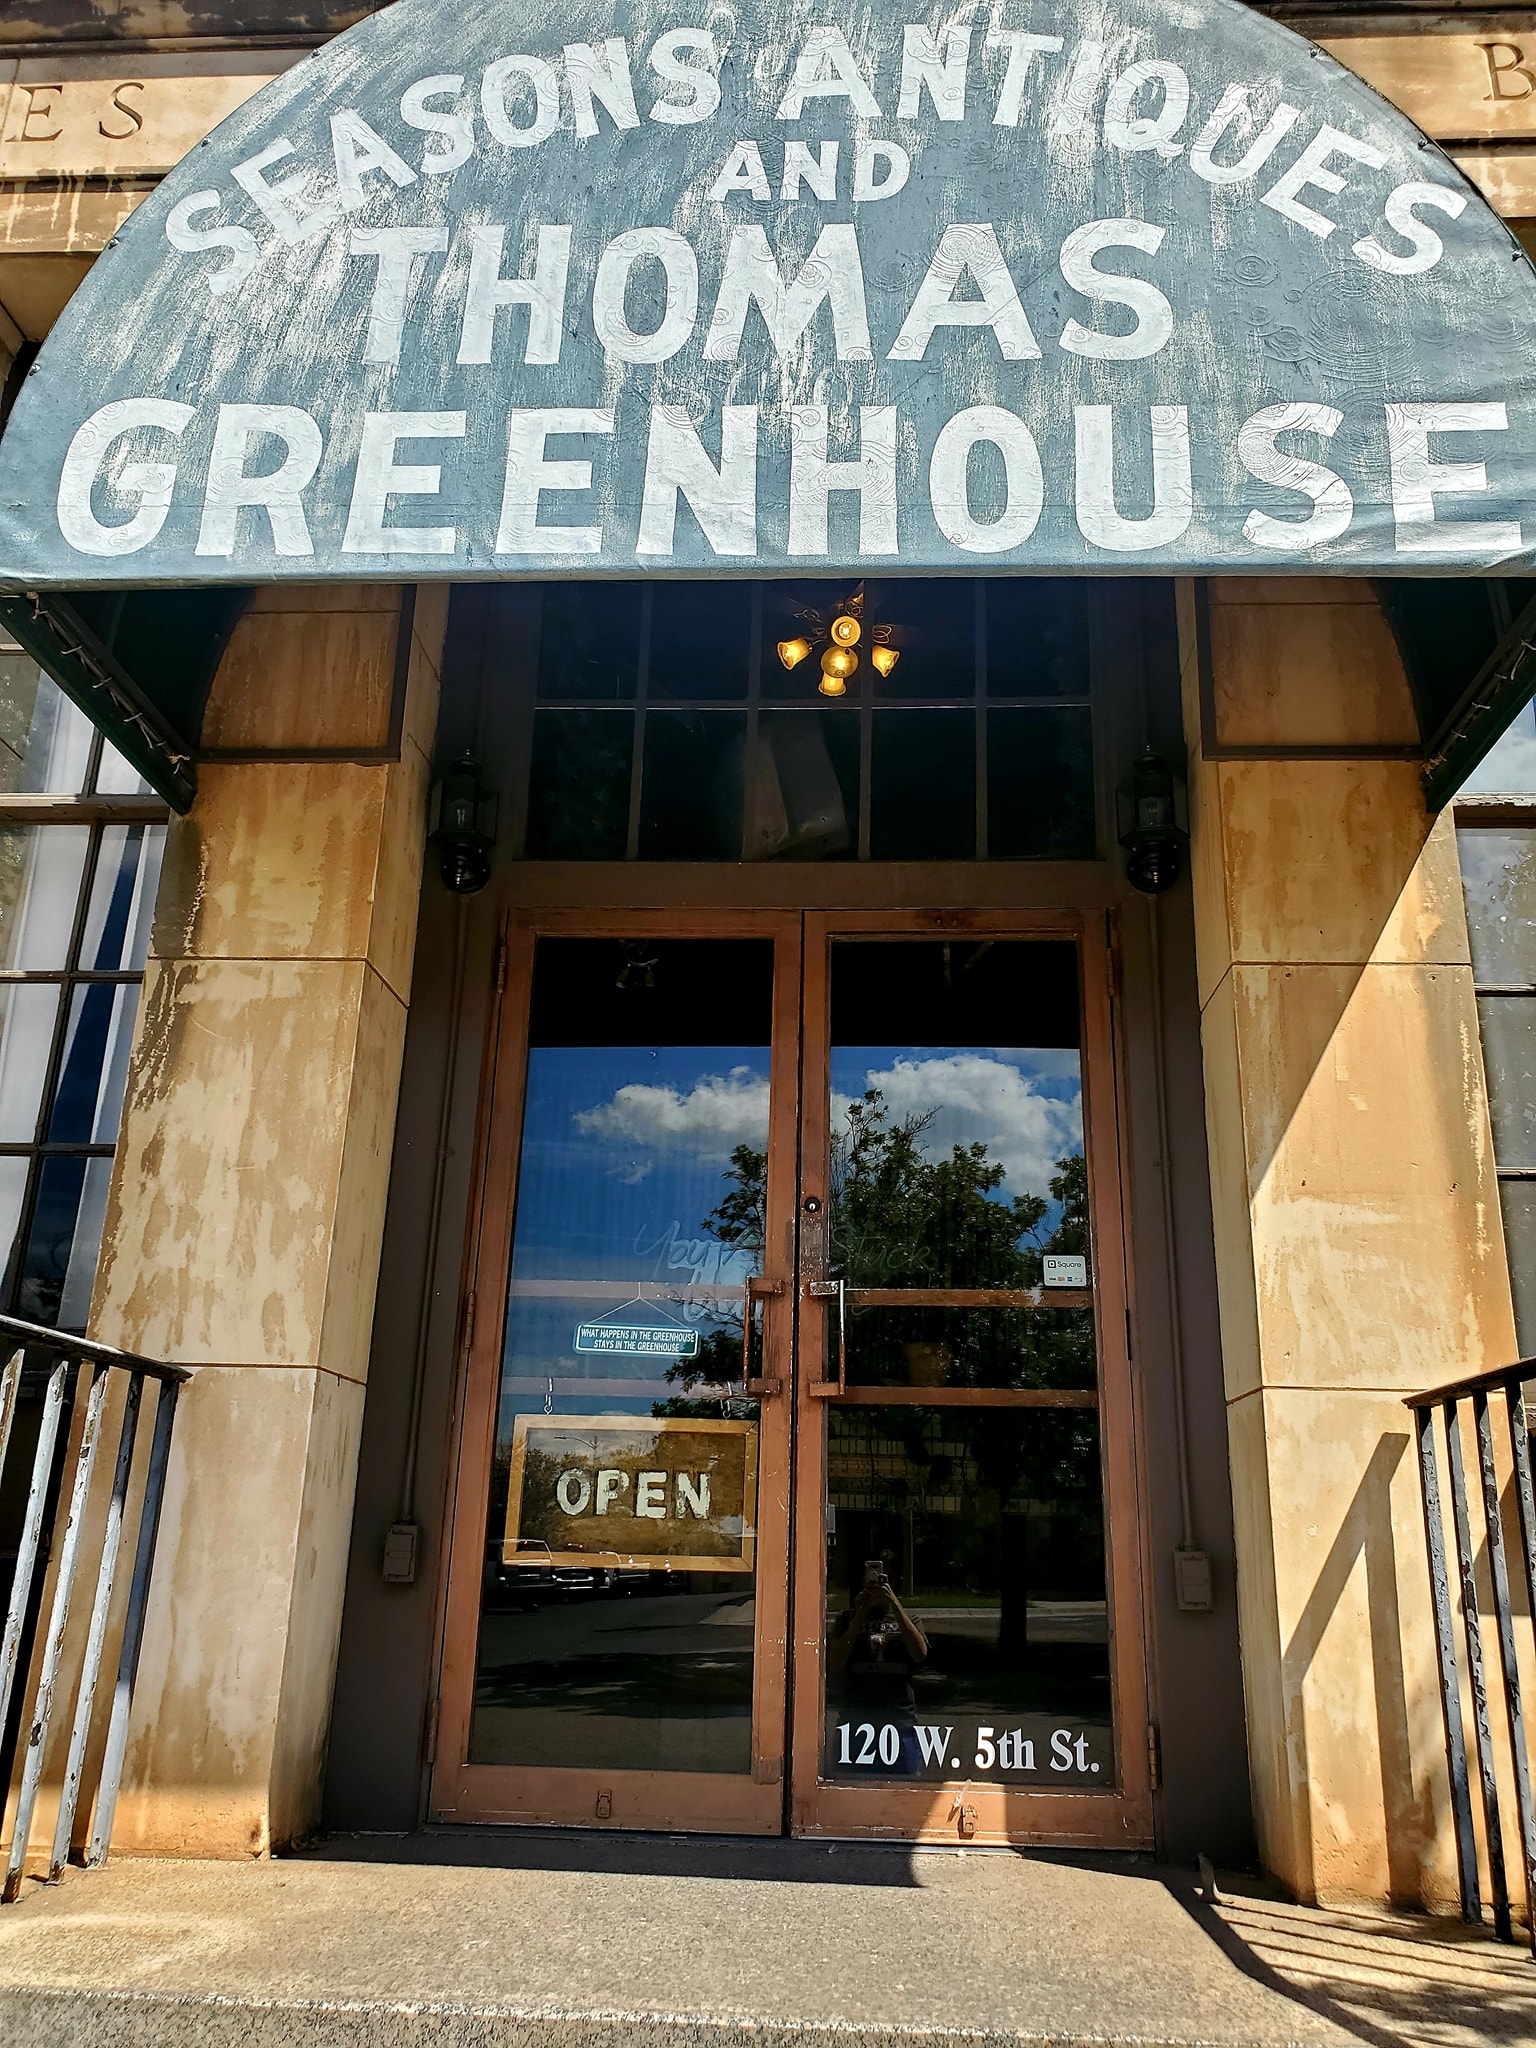 Thomas Green House